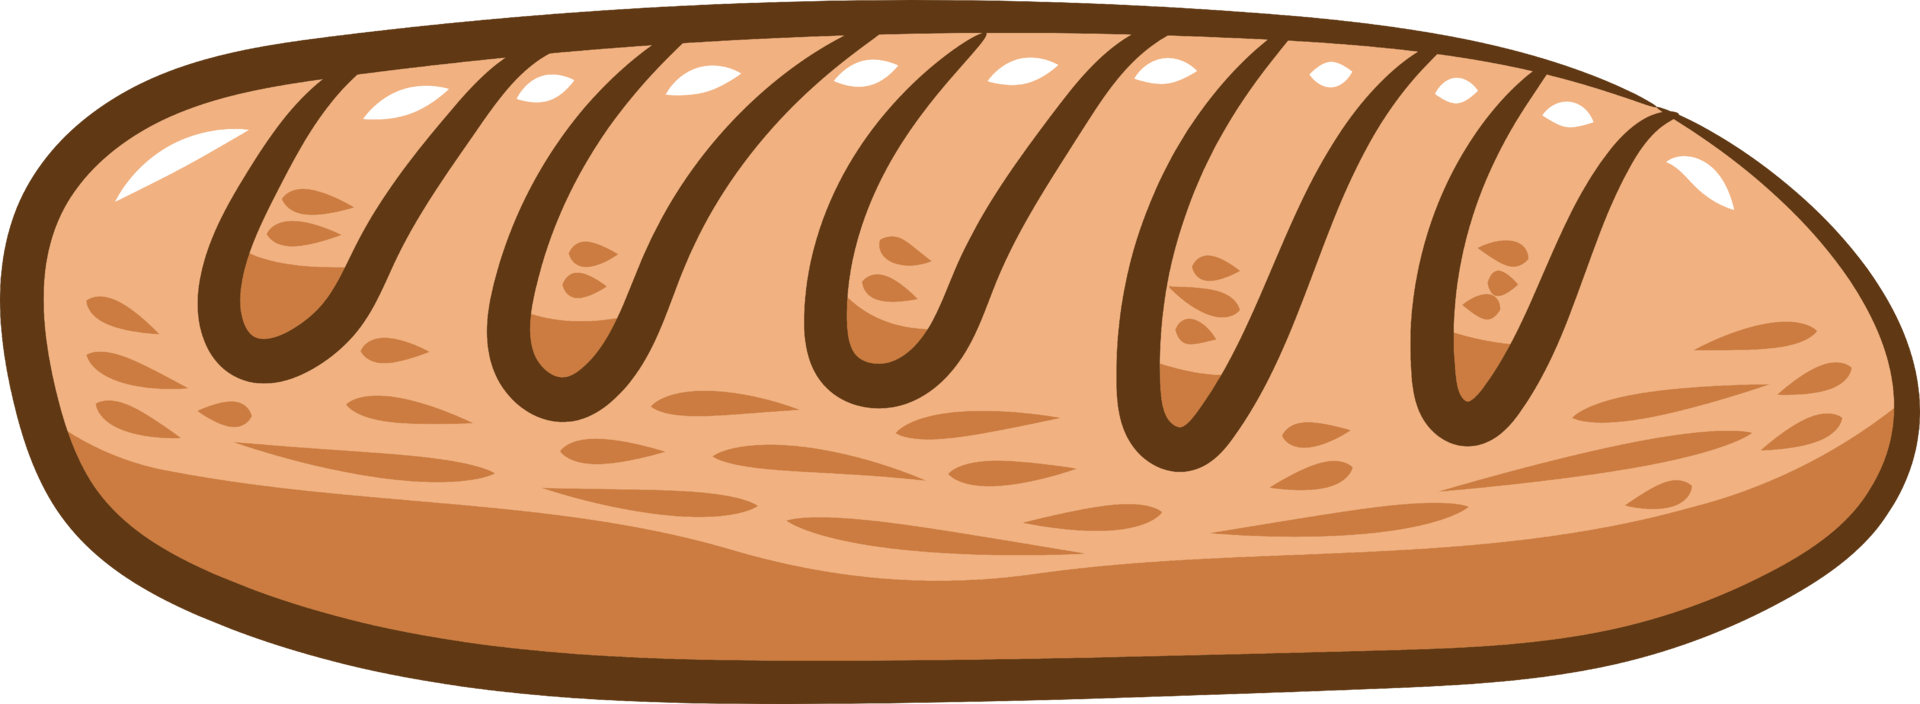 bröd png grafisk ClipArt design